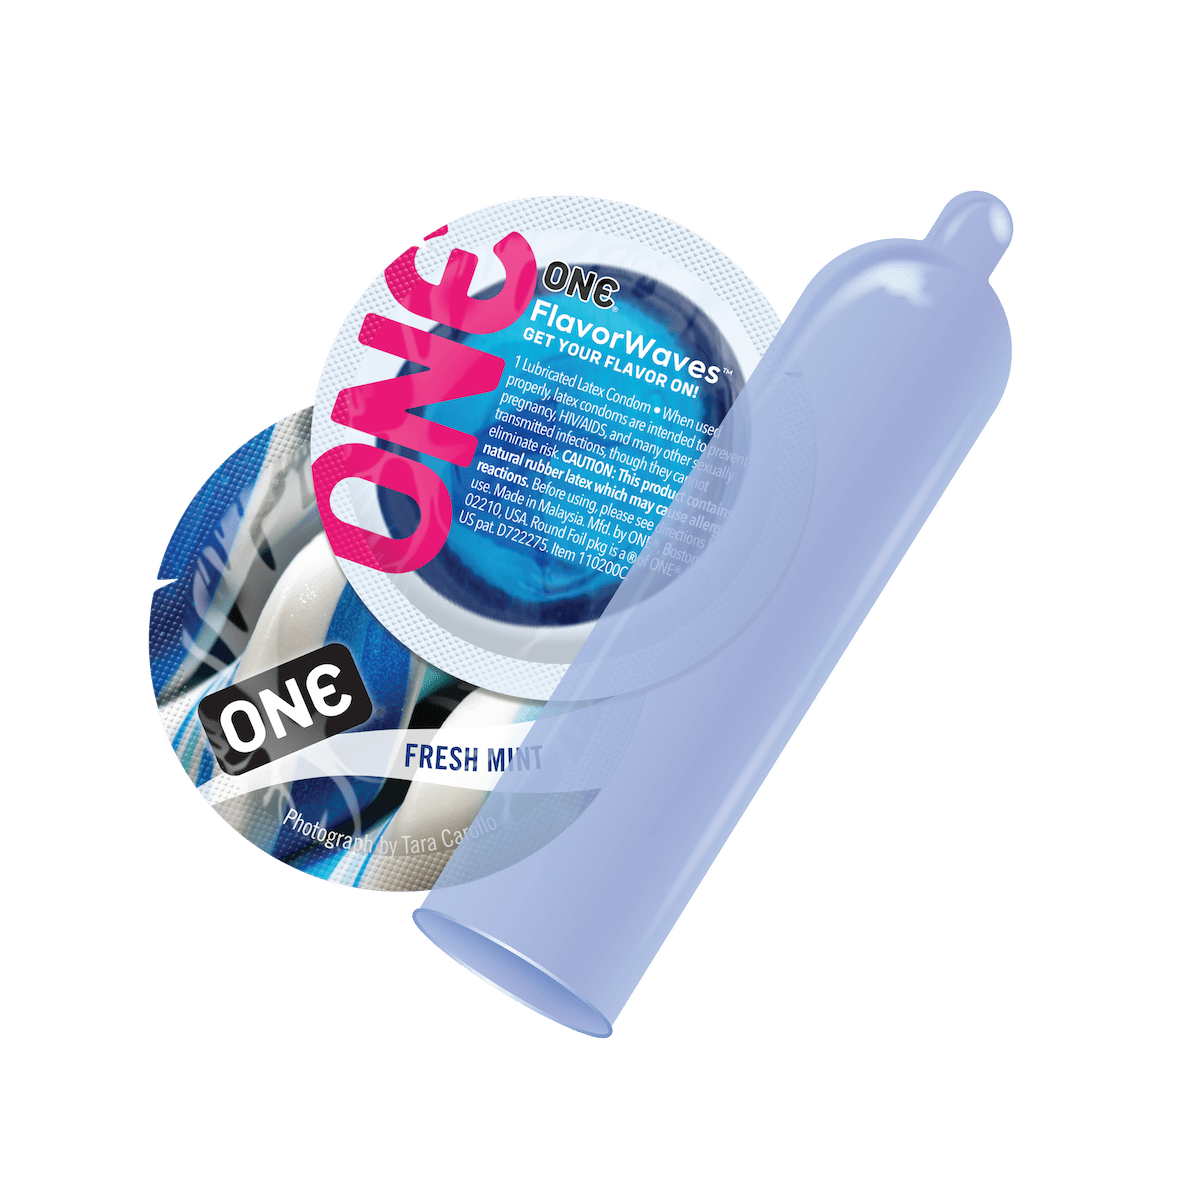 ONE FlavorWaves Condoms - Bowl of 100